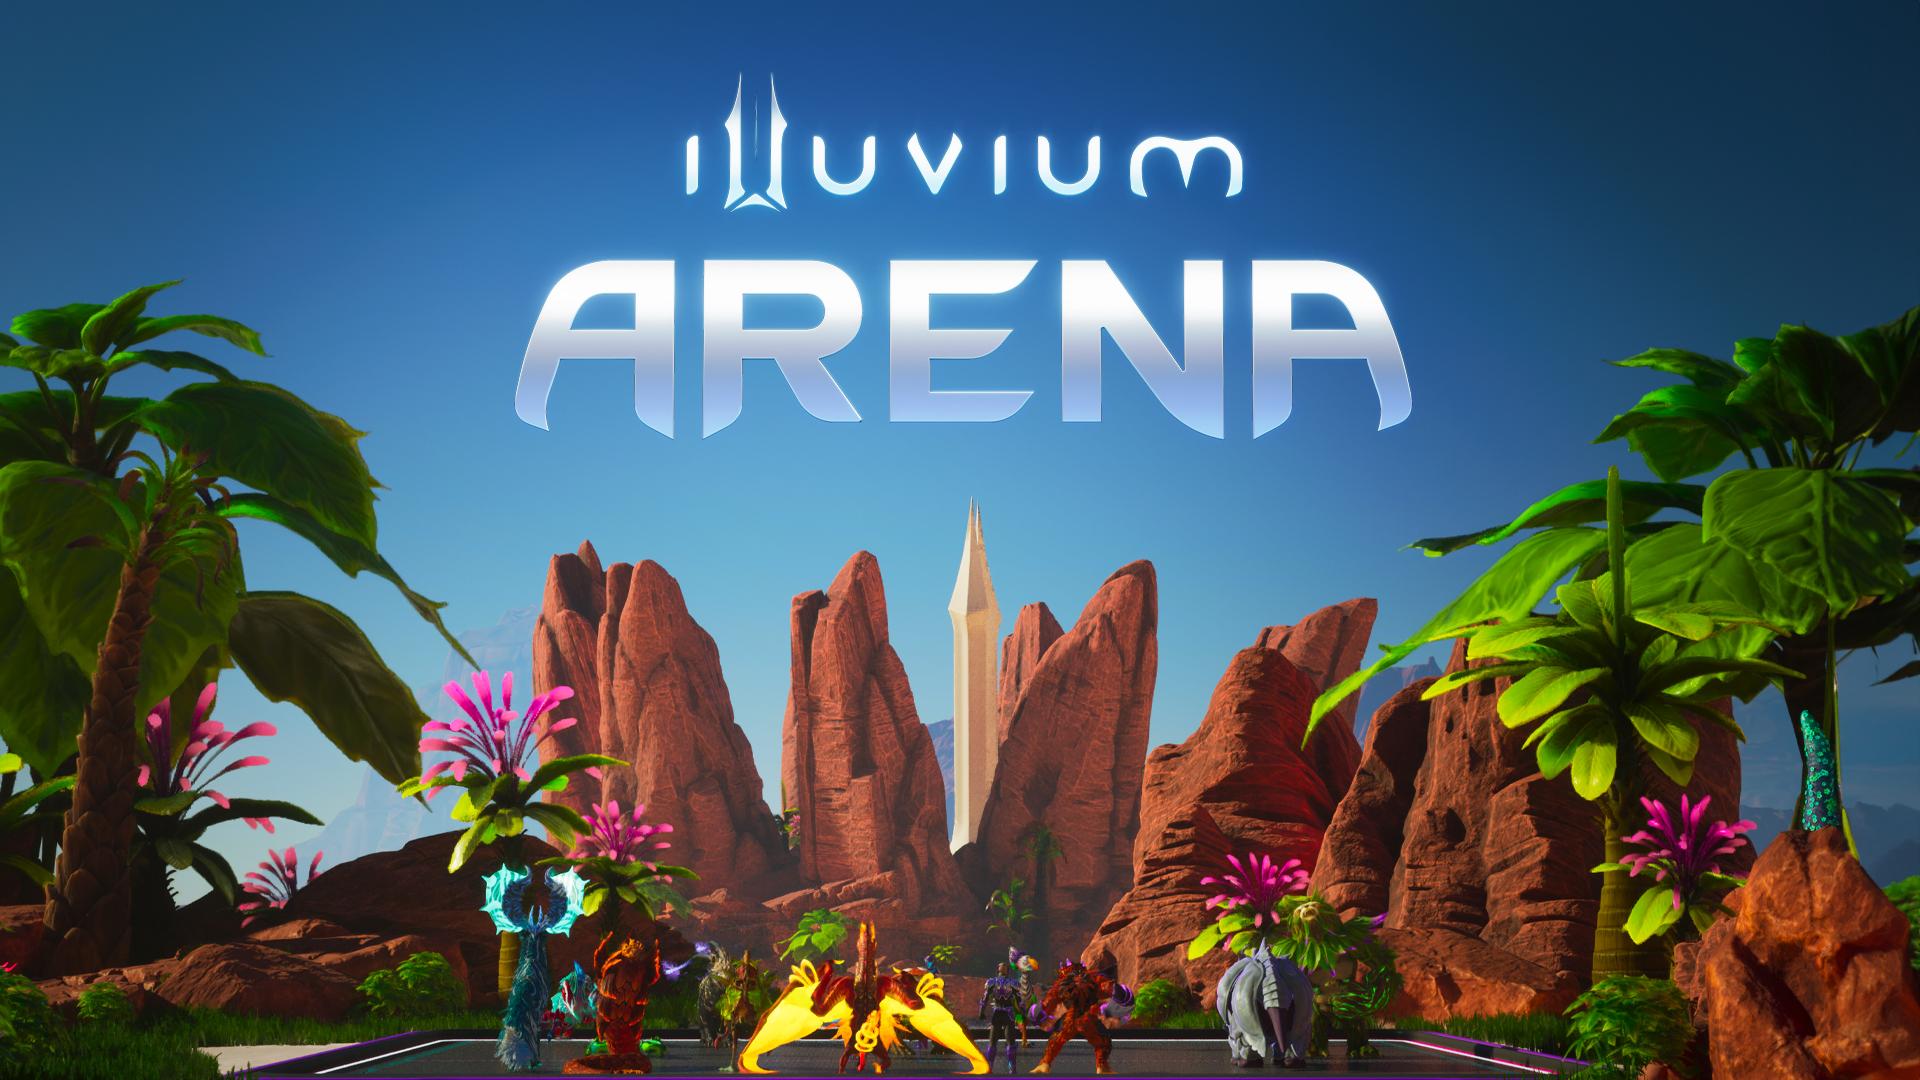 Illuvium's Epic Debut: A Milestone for Blockchain Gaming!